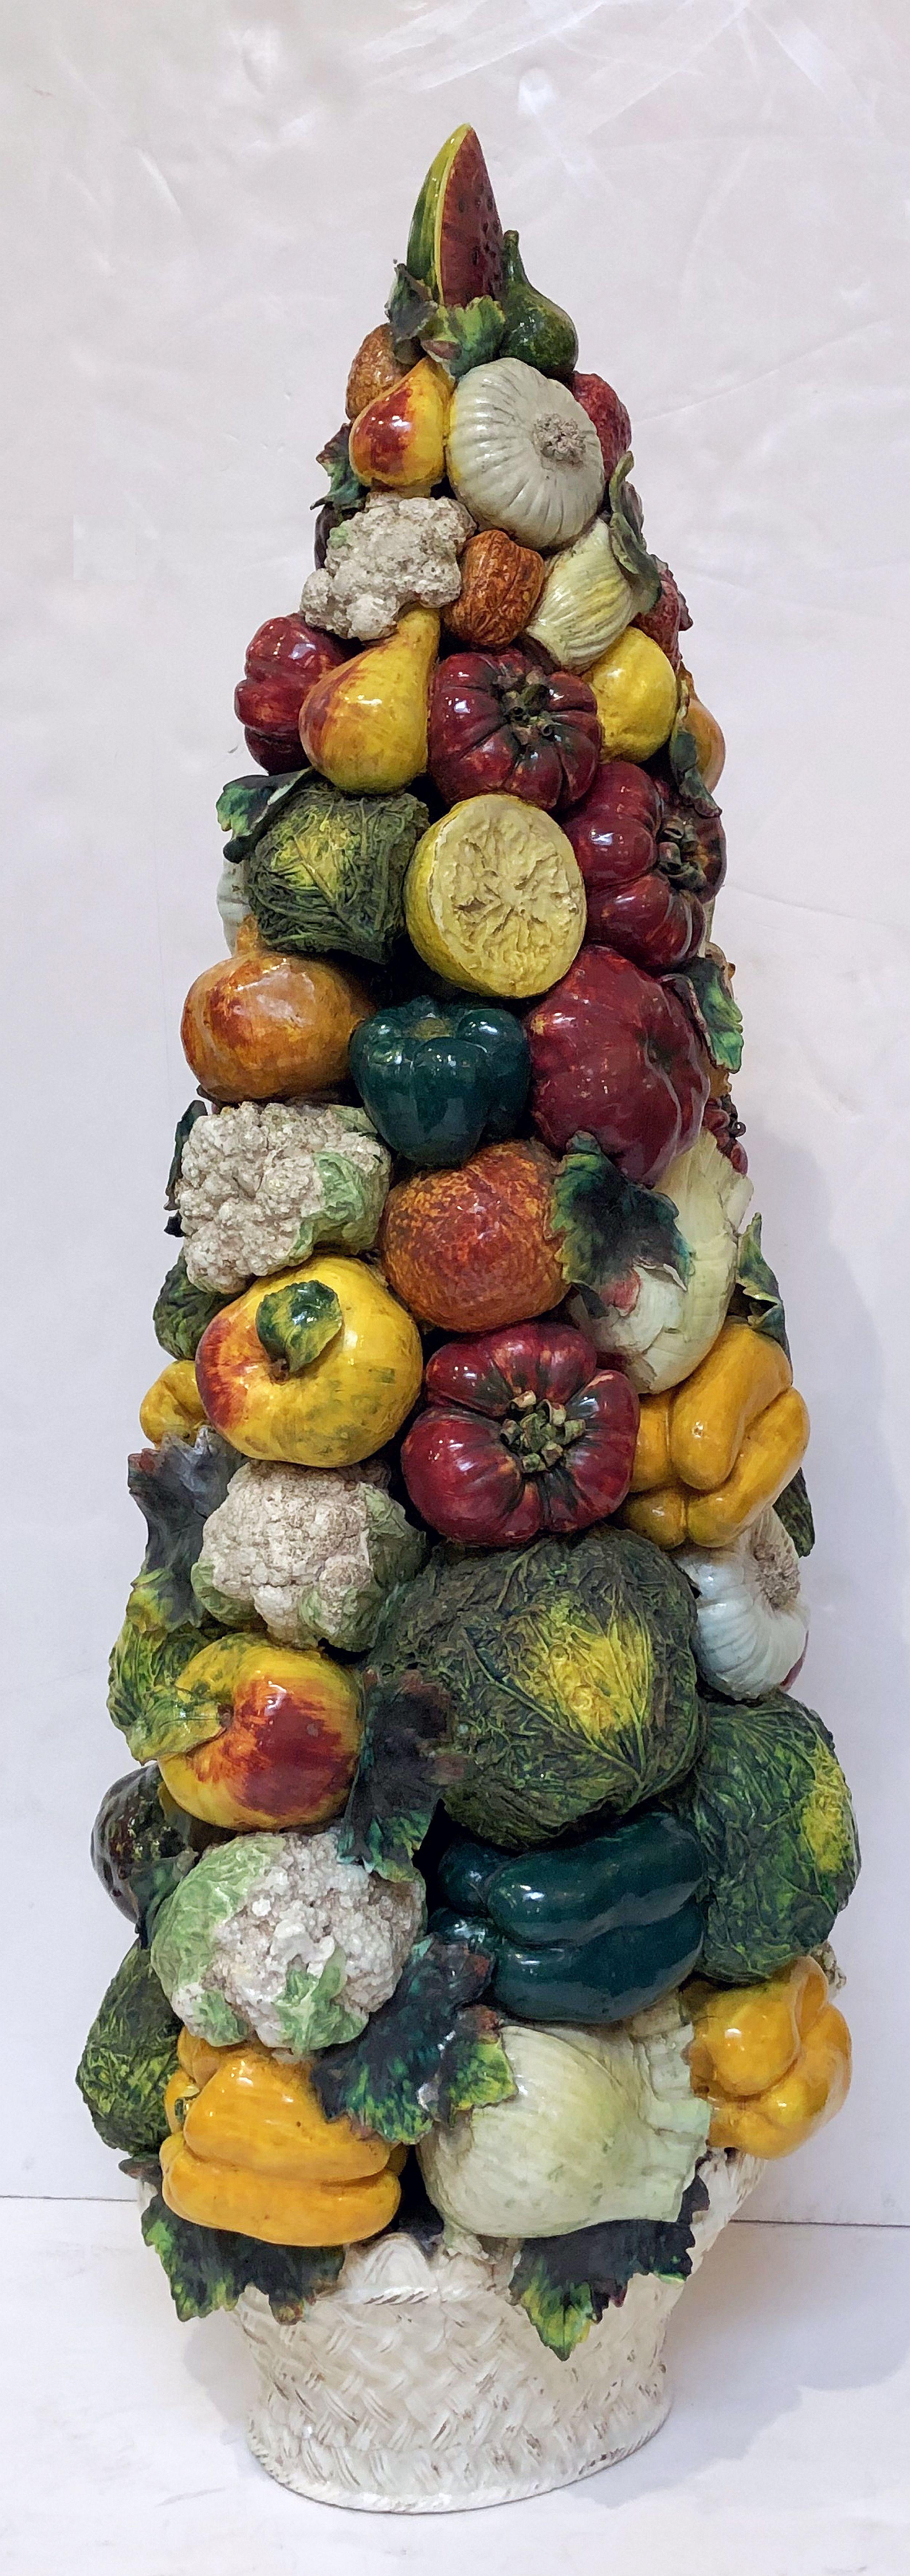 Ein feiner Gemüseturm aus Majolika, der den Keramikkünstlern von Este, Italien, zugeschrieben wird und ein naturalistisches Gemüserelief auf einem geflochtenen Korbsockel zeigt.

Abmessungen: H 37 3/4 Zoll x B 14 1/2 Zoll x T 11 Zoll.